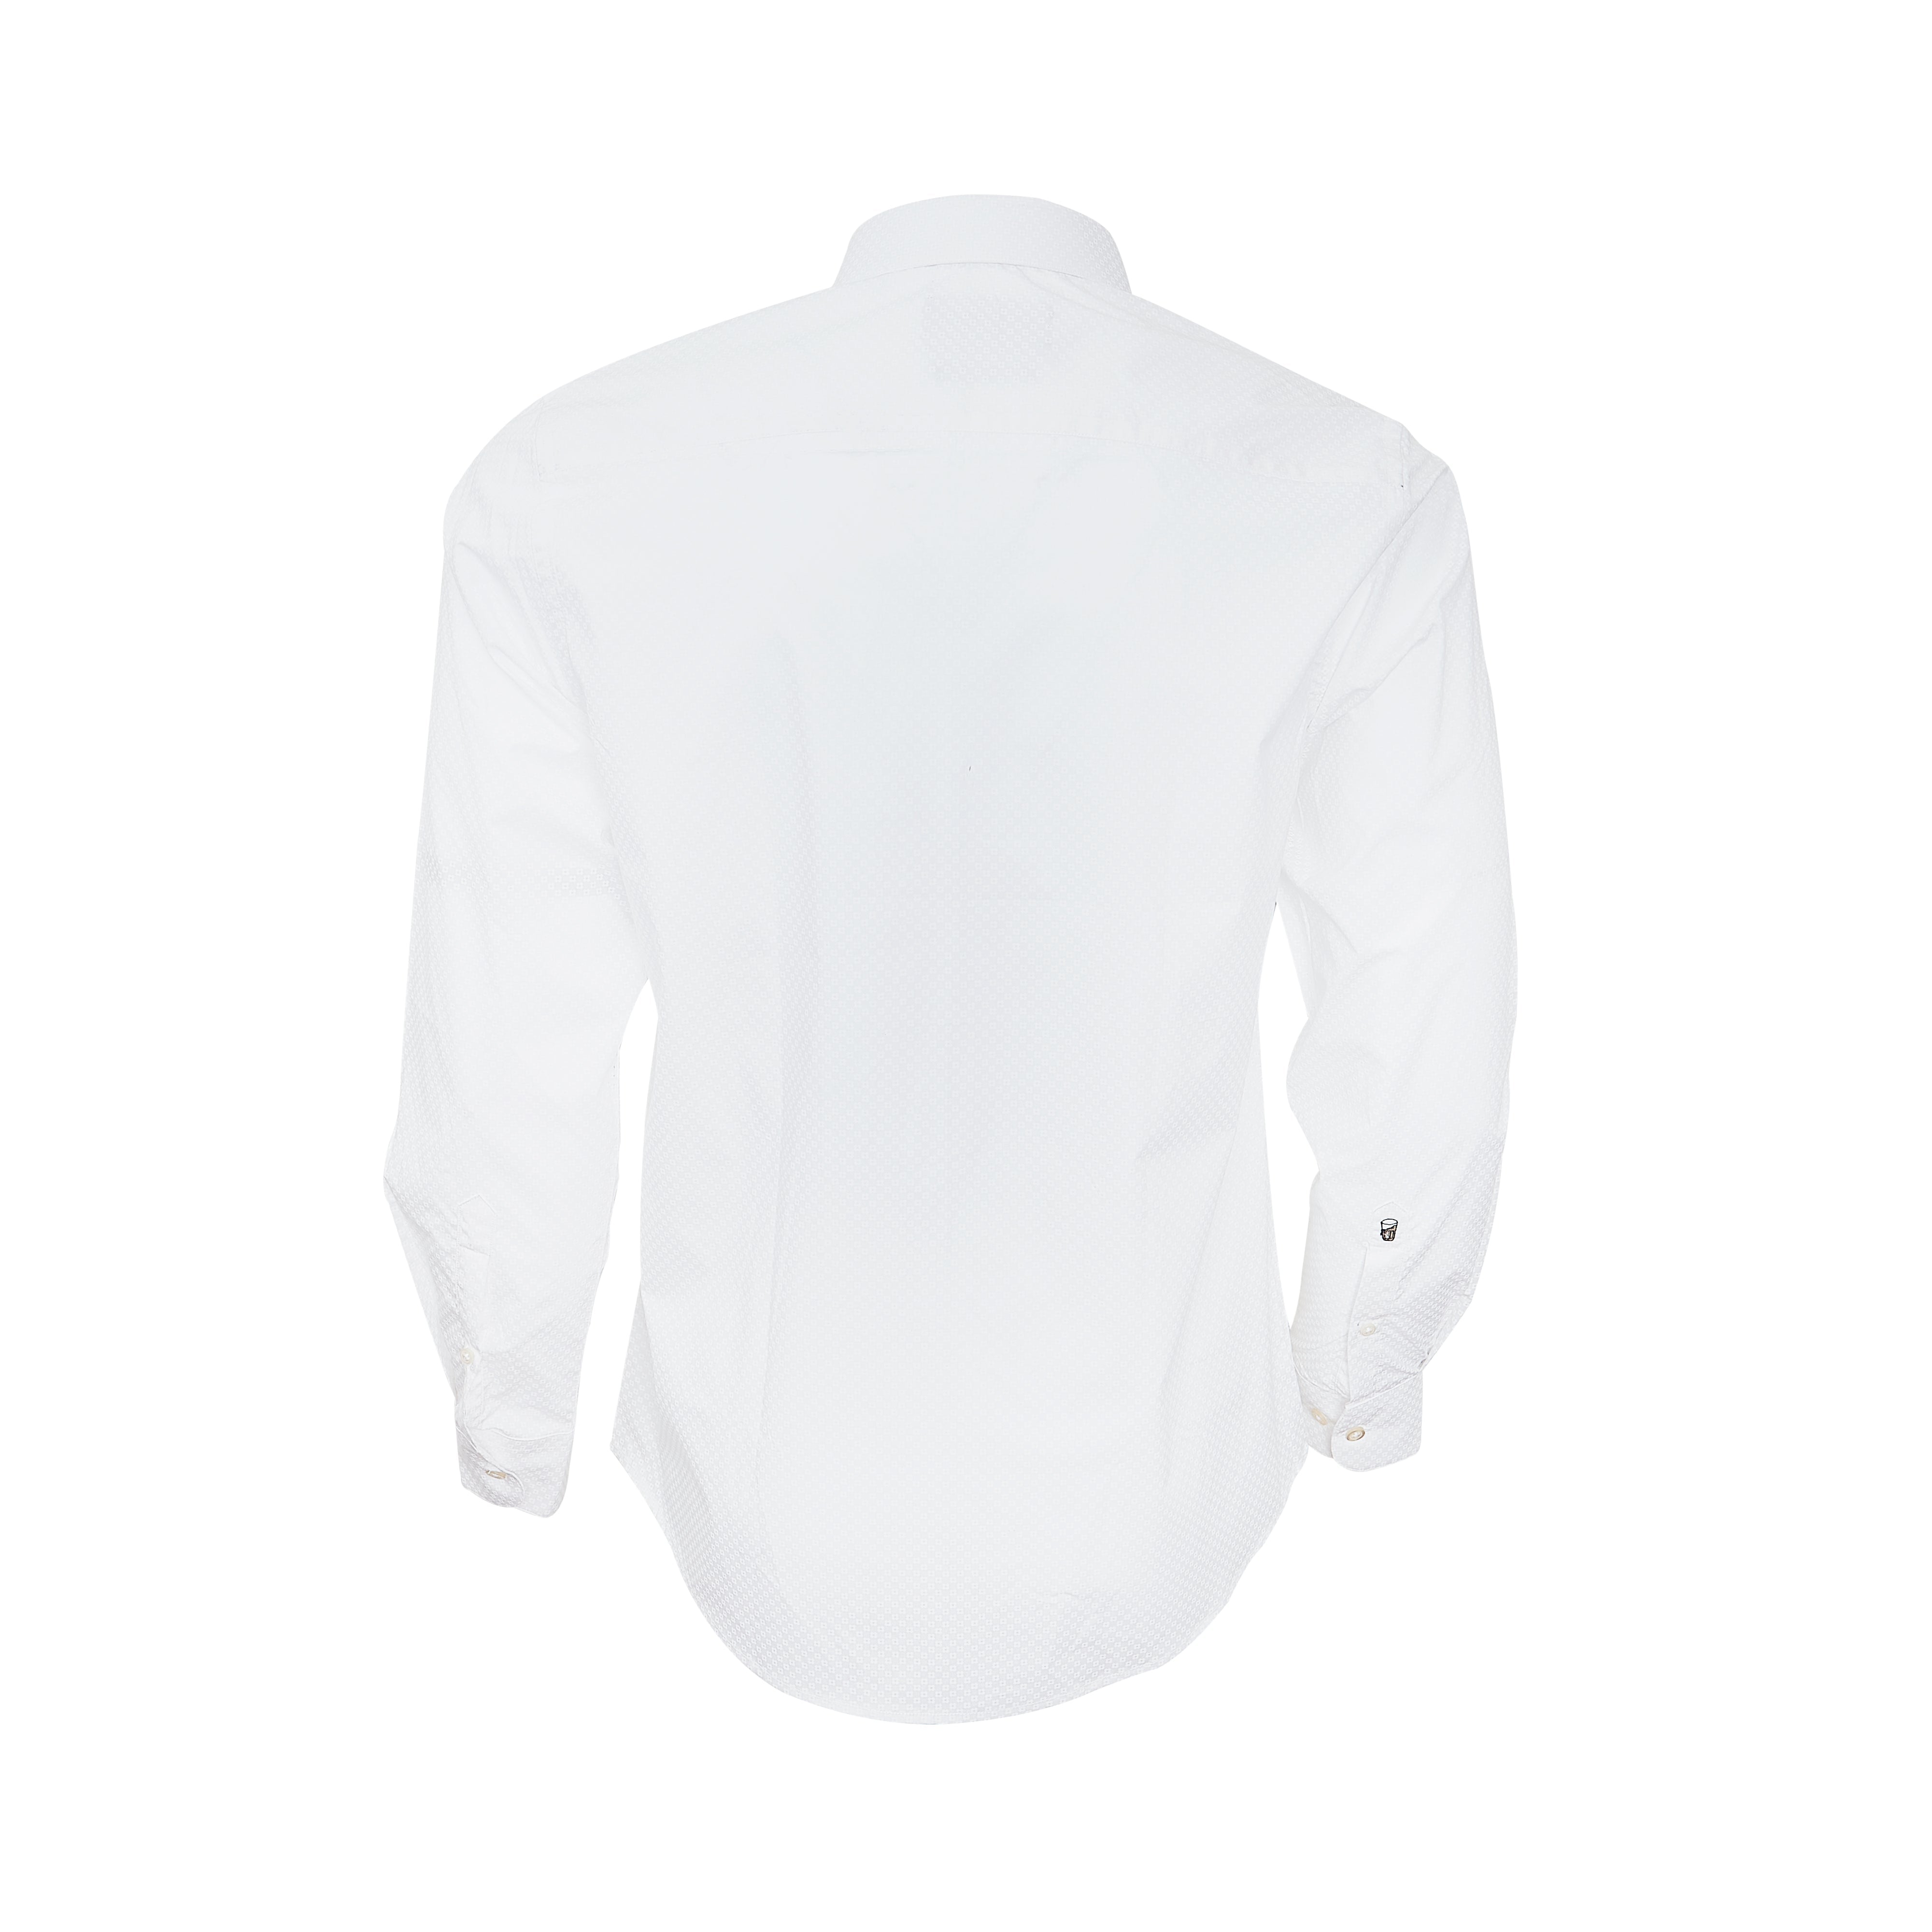 White on white Print Full-sleeved shirt